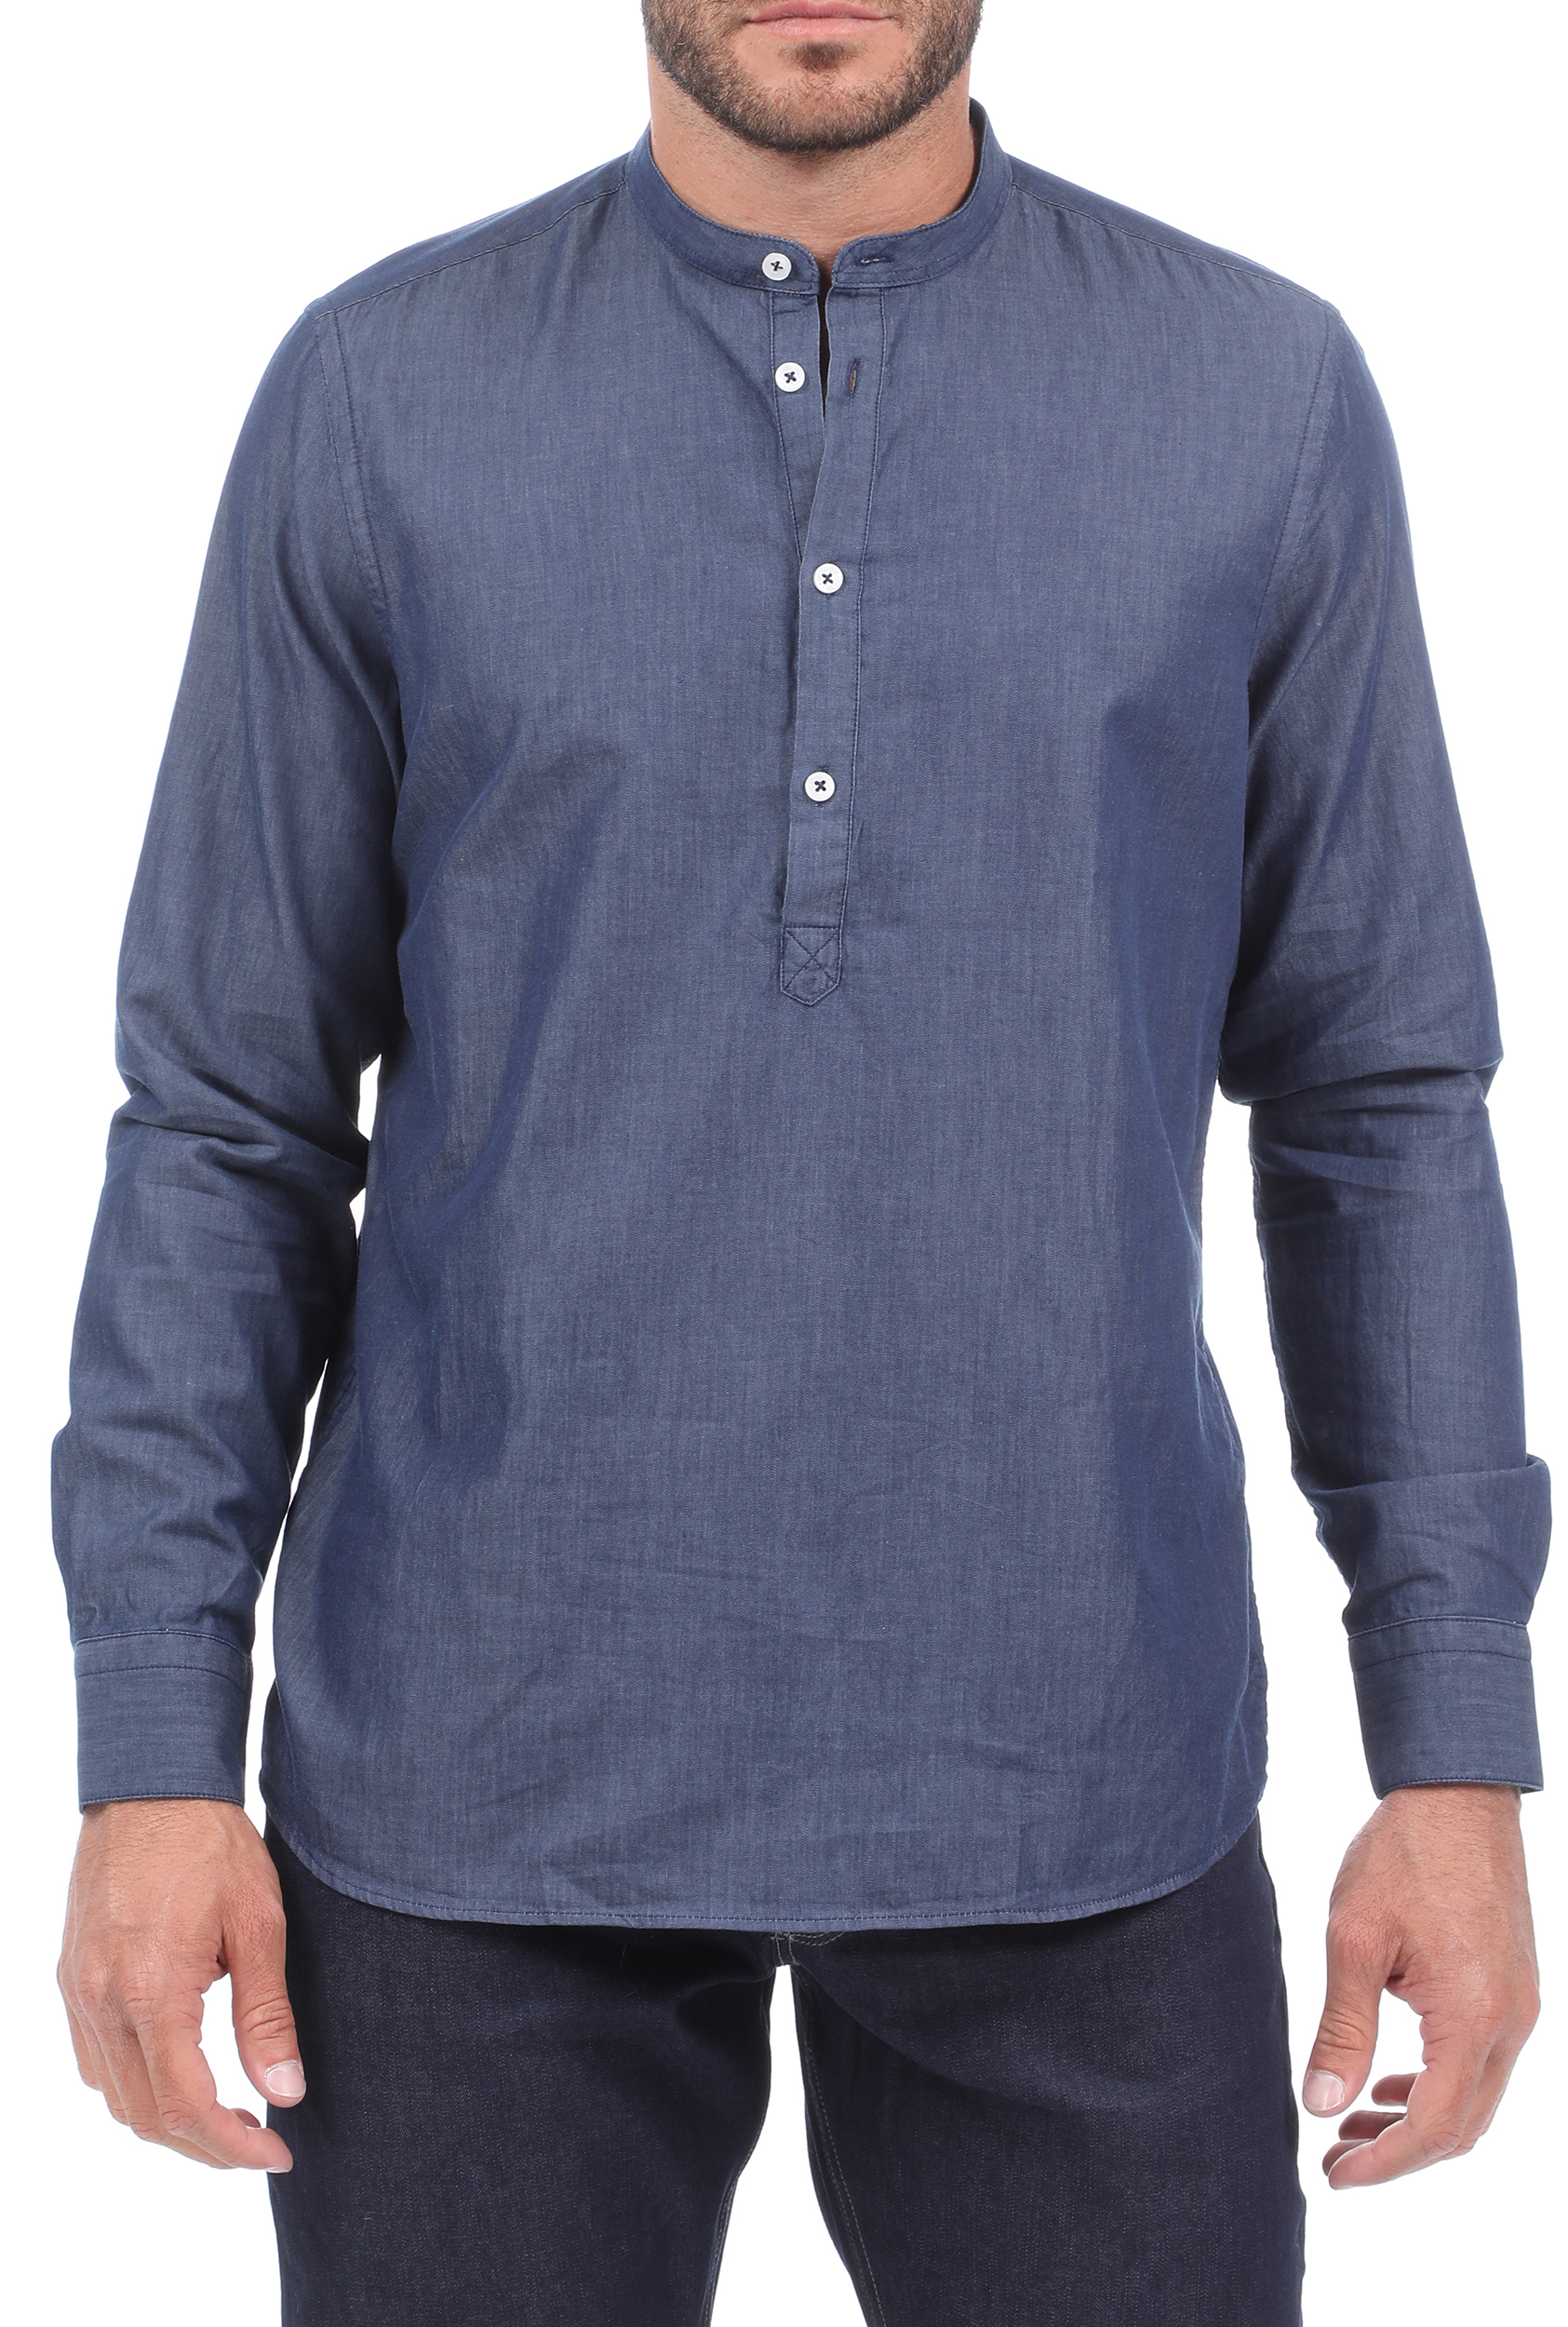 Ανδρικά/Ρούχα/Πουκάμισα/Μακρυμάνικα SSEINSE - Ανδρικό πουκάμισο SSEINSE CORENANA μπλε